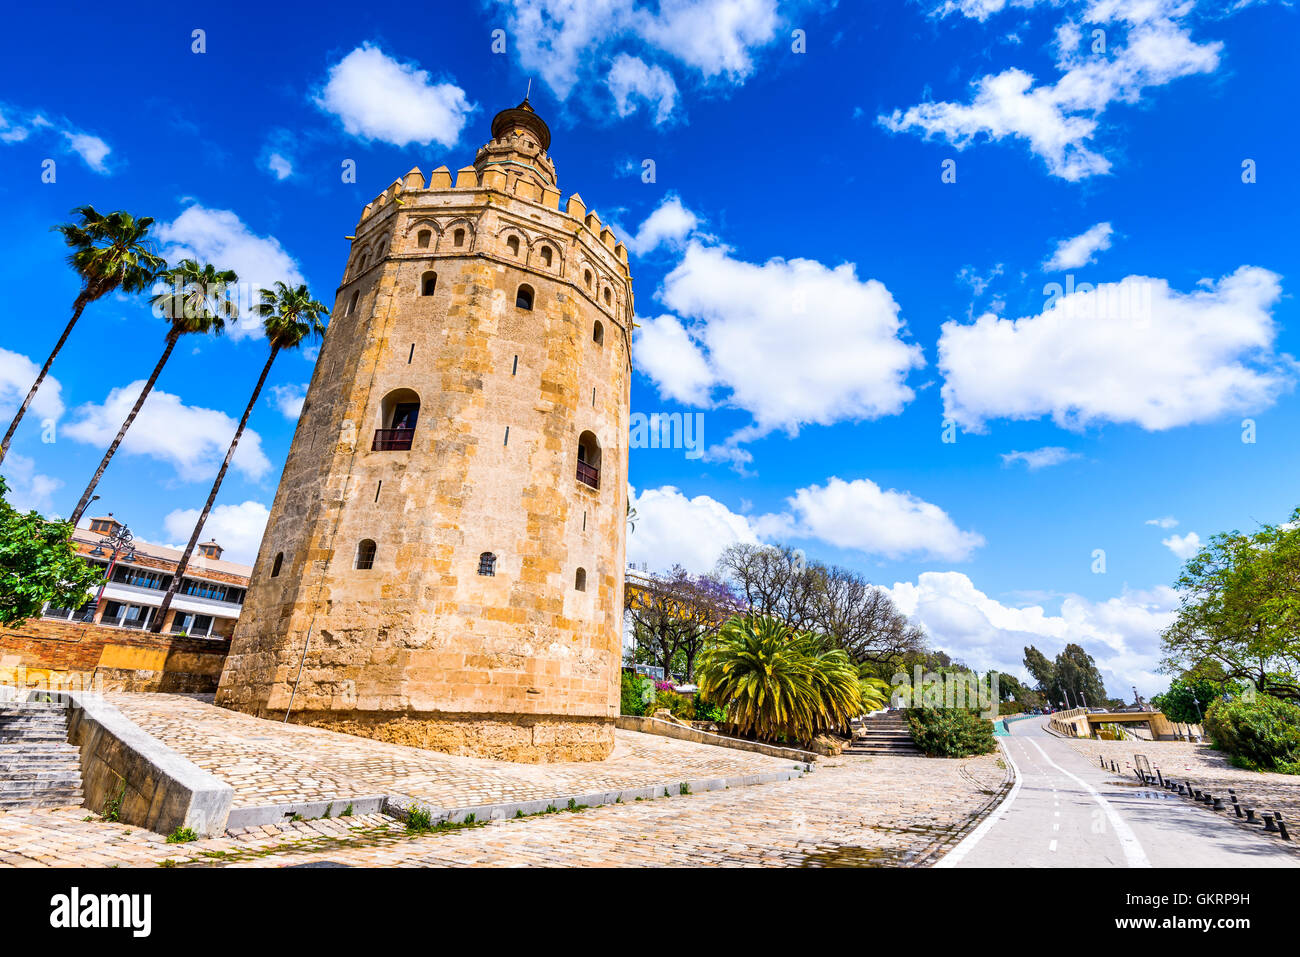 Sevilla, Andalusien, Spanien - Torre del Oro (Tower of Gold) von maurischen Dynastie der Almohaden in der Nähe des Flusses Guadalquivir errichtet. Stockfoto